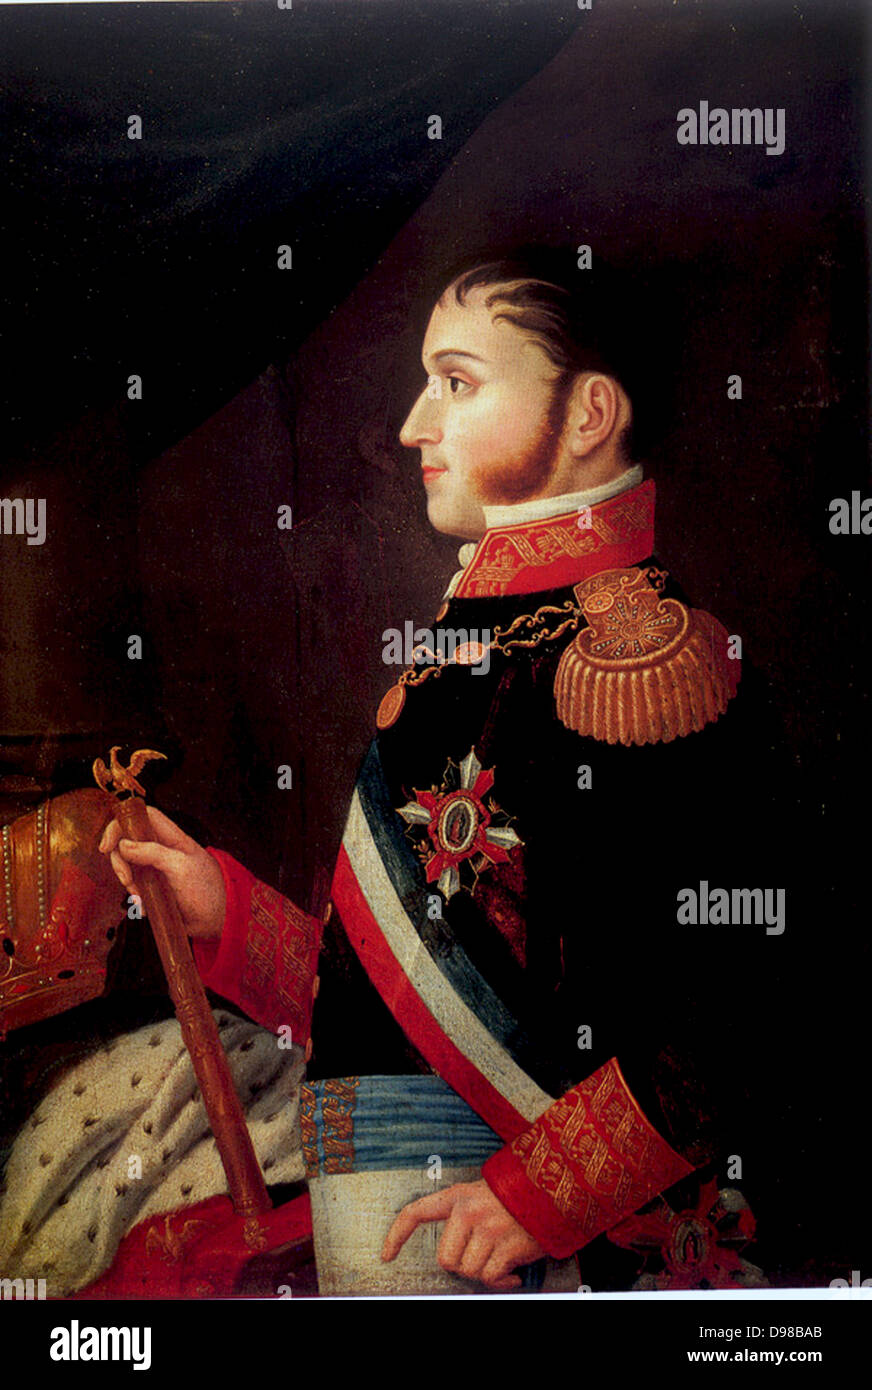 Augustín de Iturbide (1783-1824) noto anche come Agustín I, imperatore costituzionale del Messico 1822-1823.da Jiménez Codinach (1750-1821) Foto Stock